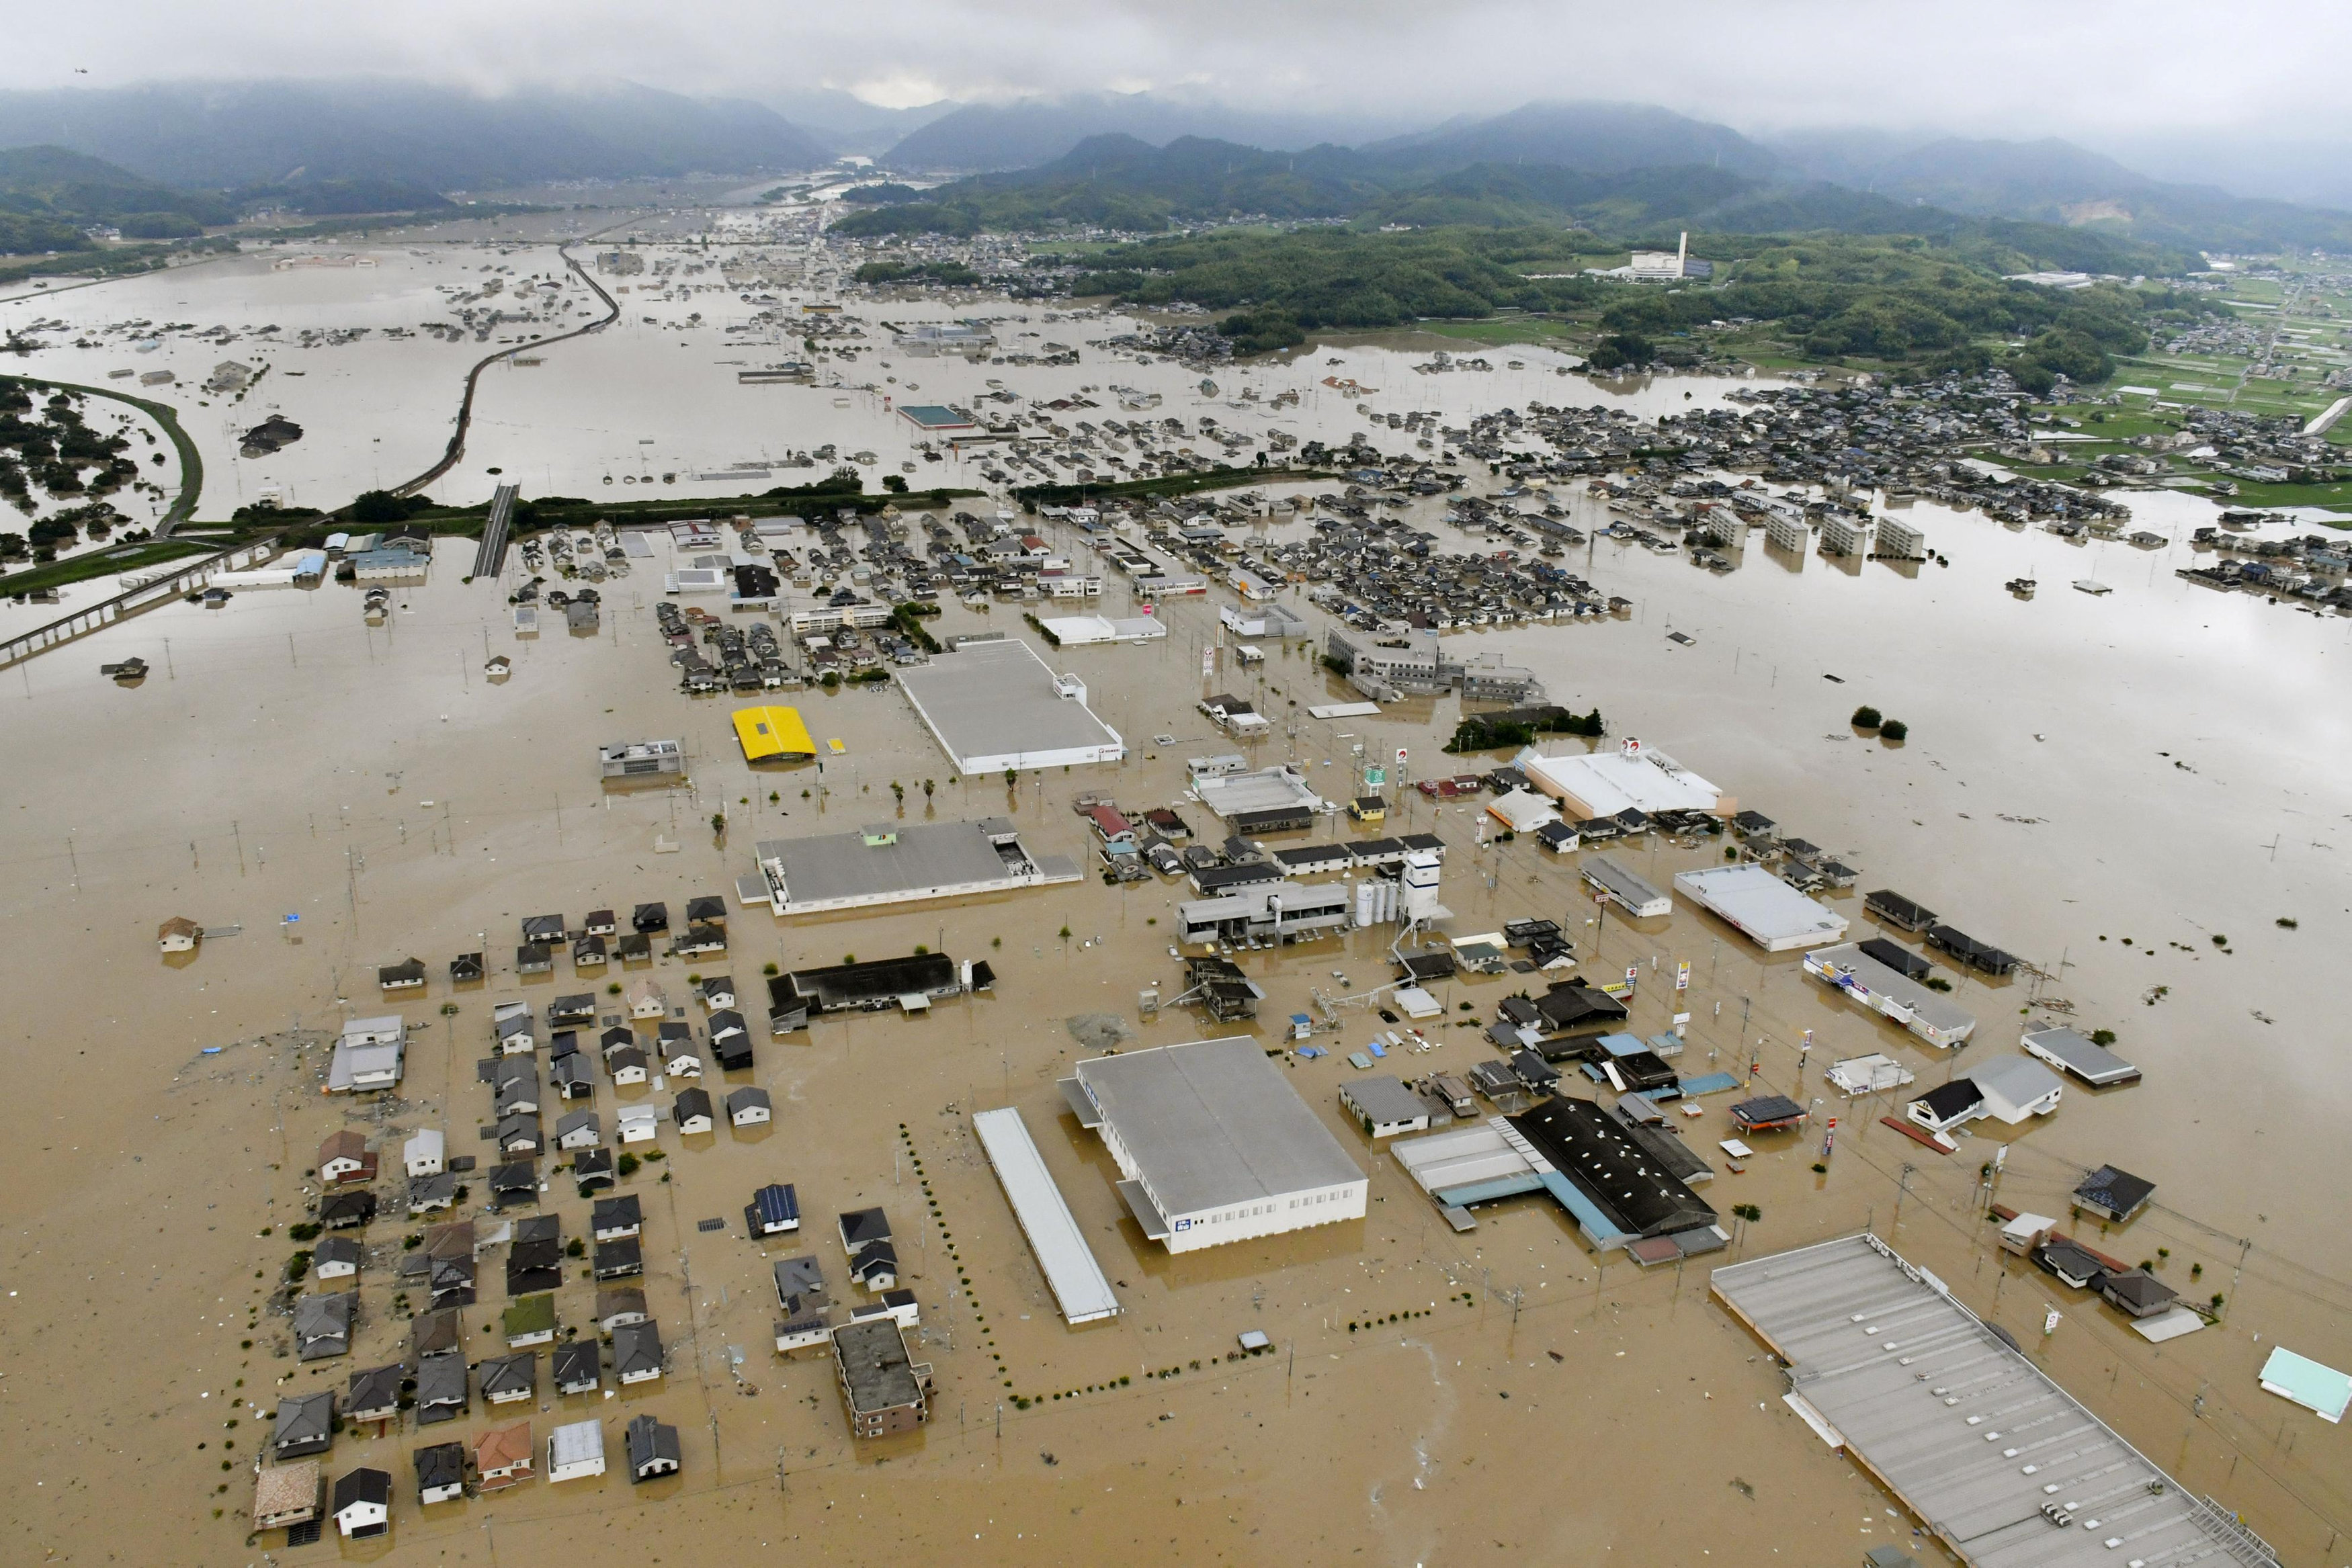 صورة جوية تظهر غرق بيوت ومباني في كوراشيكي، جنوب اليابان، بسبب الأمطار الغزيرة، 7 يوليو 2018. كويودو/ رويترز